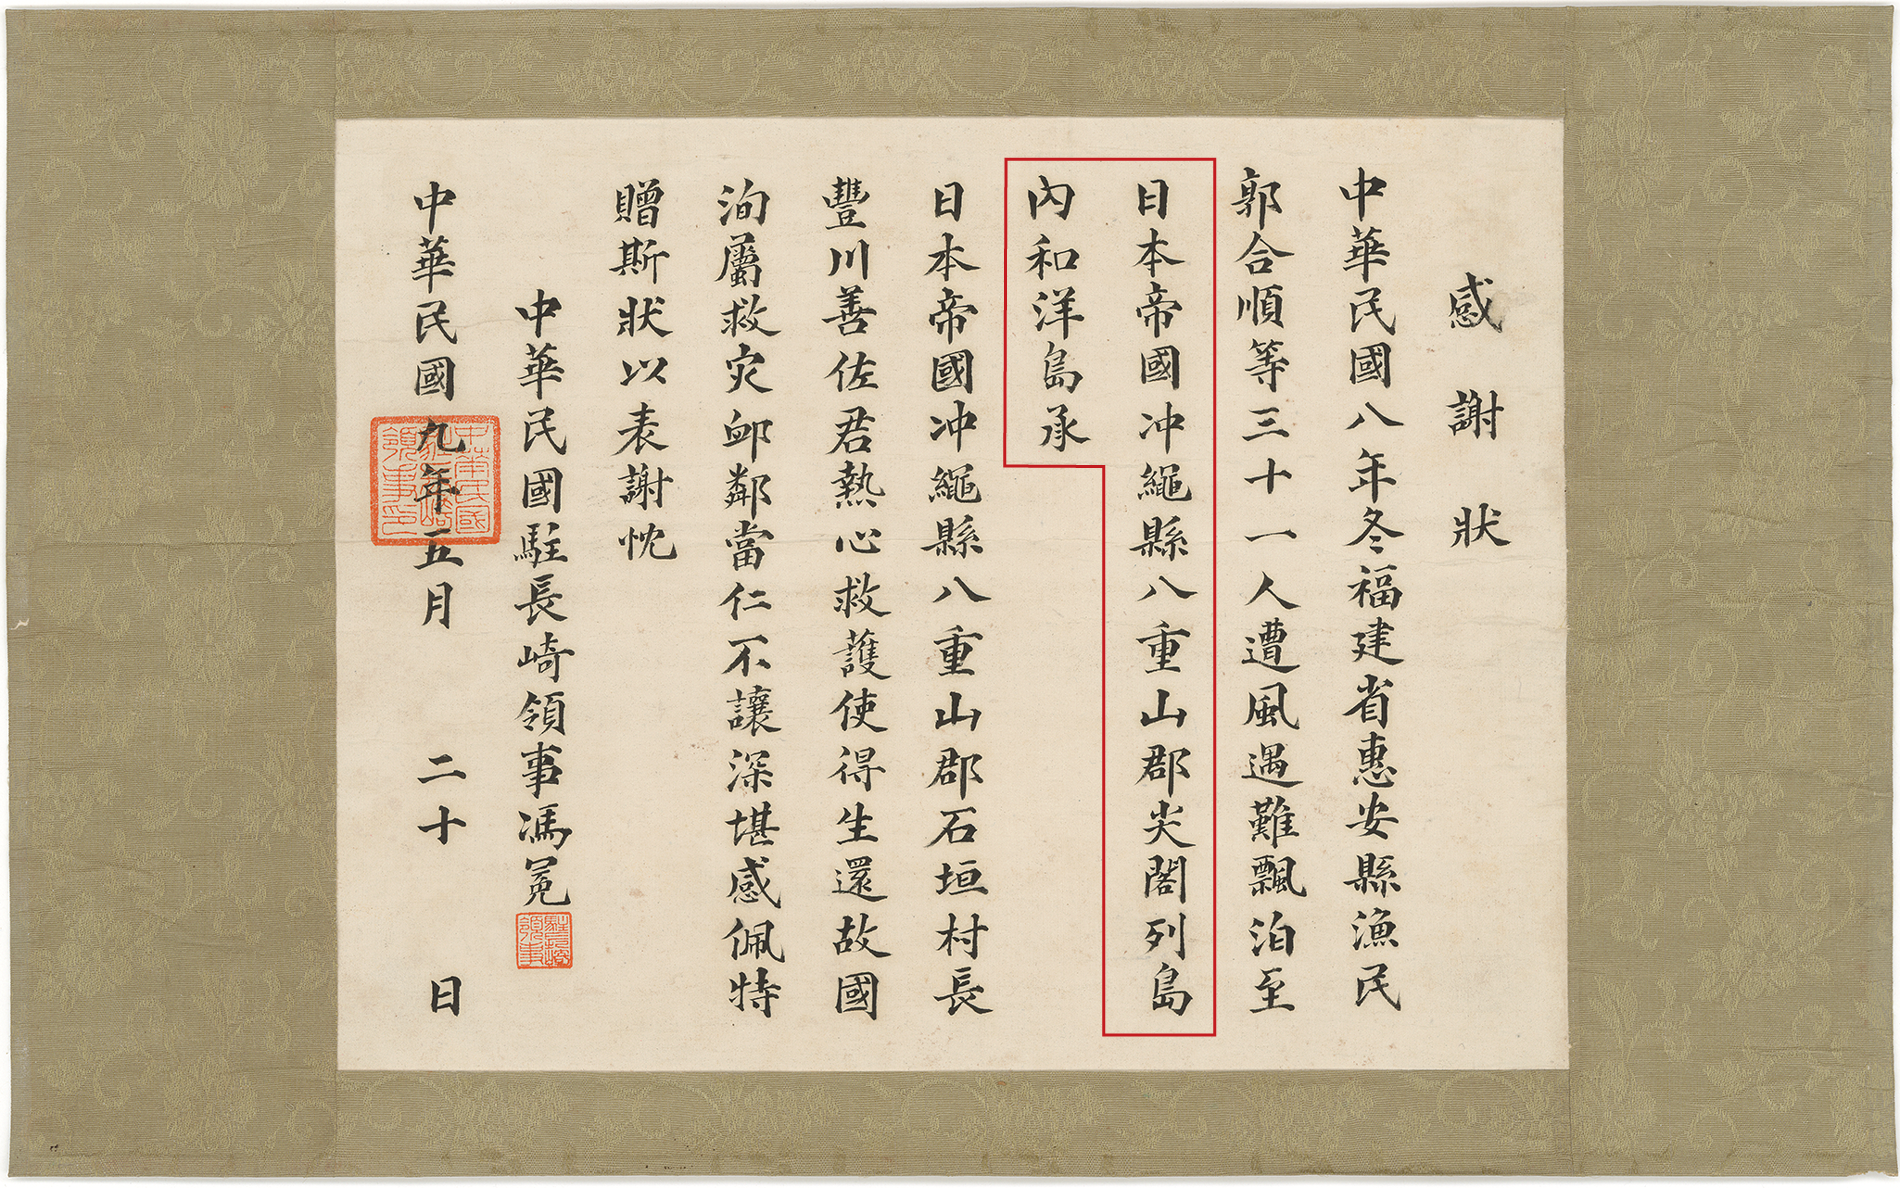 1920年（大正9年）中华民国驻长崎领事赠送给石垣村长丰川善佐的感谢状